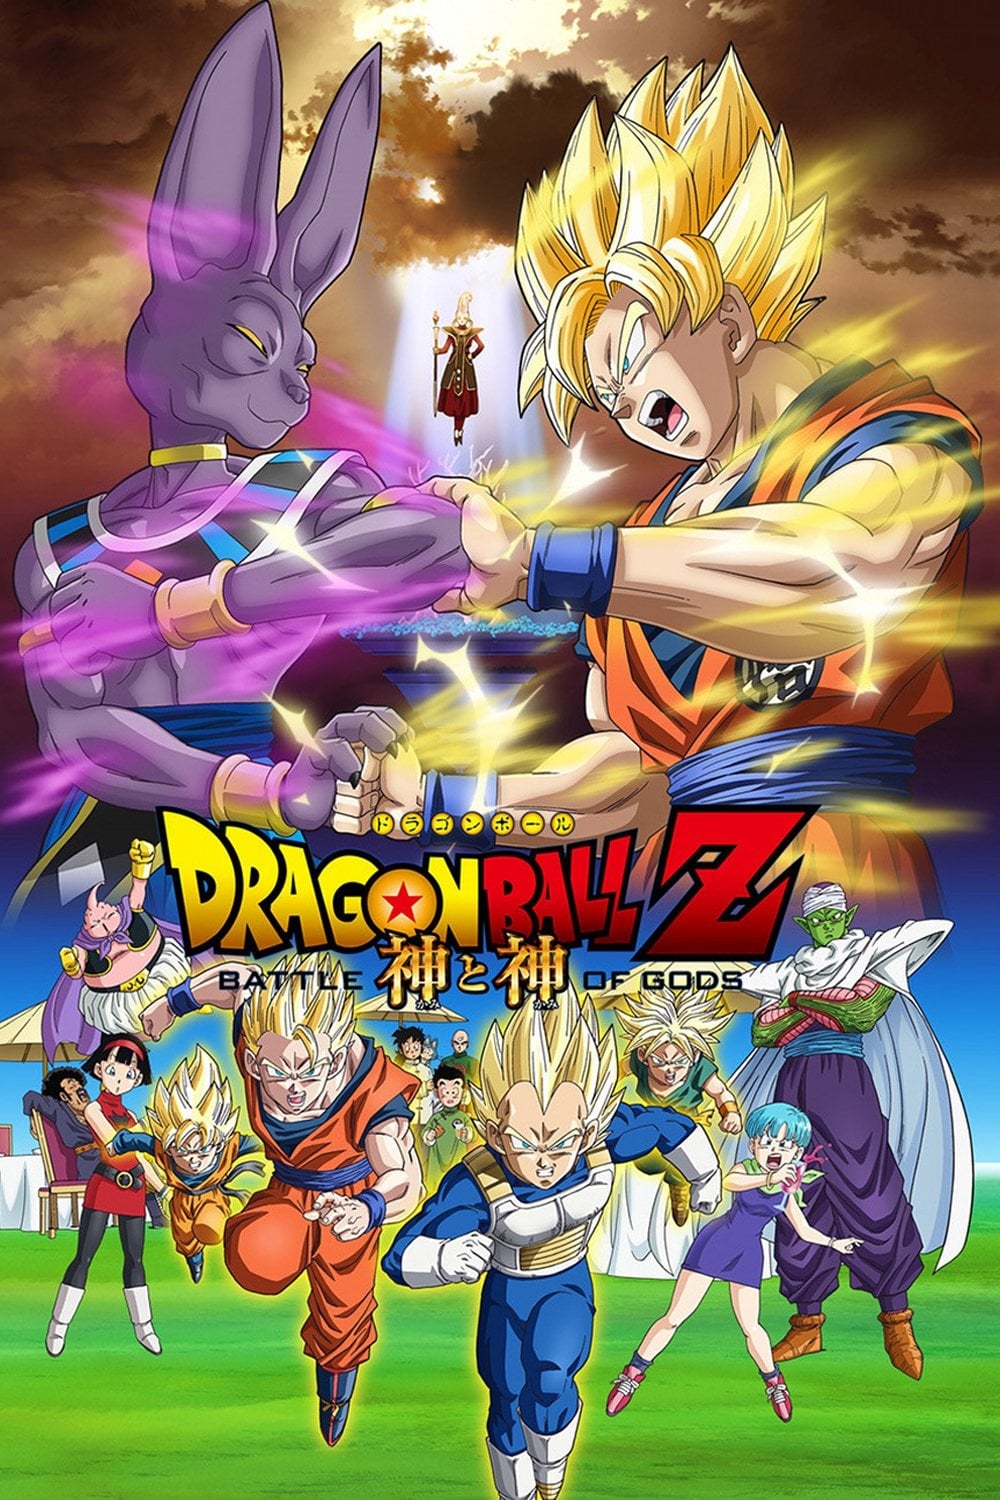  Tema de abertura de 'Dragon Ball Z' ganha nova versão  no filme 'Dragon Ball Z: Battle of Gods